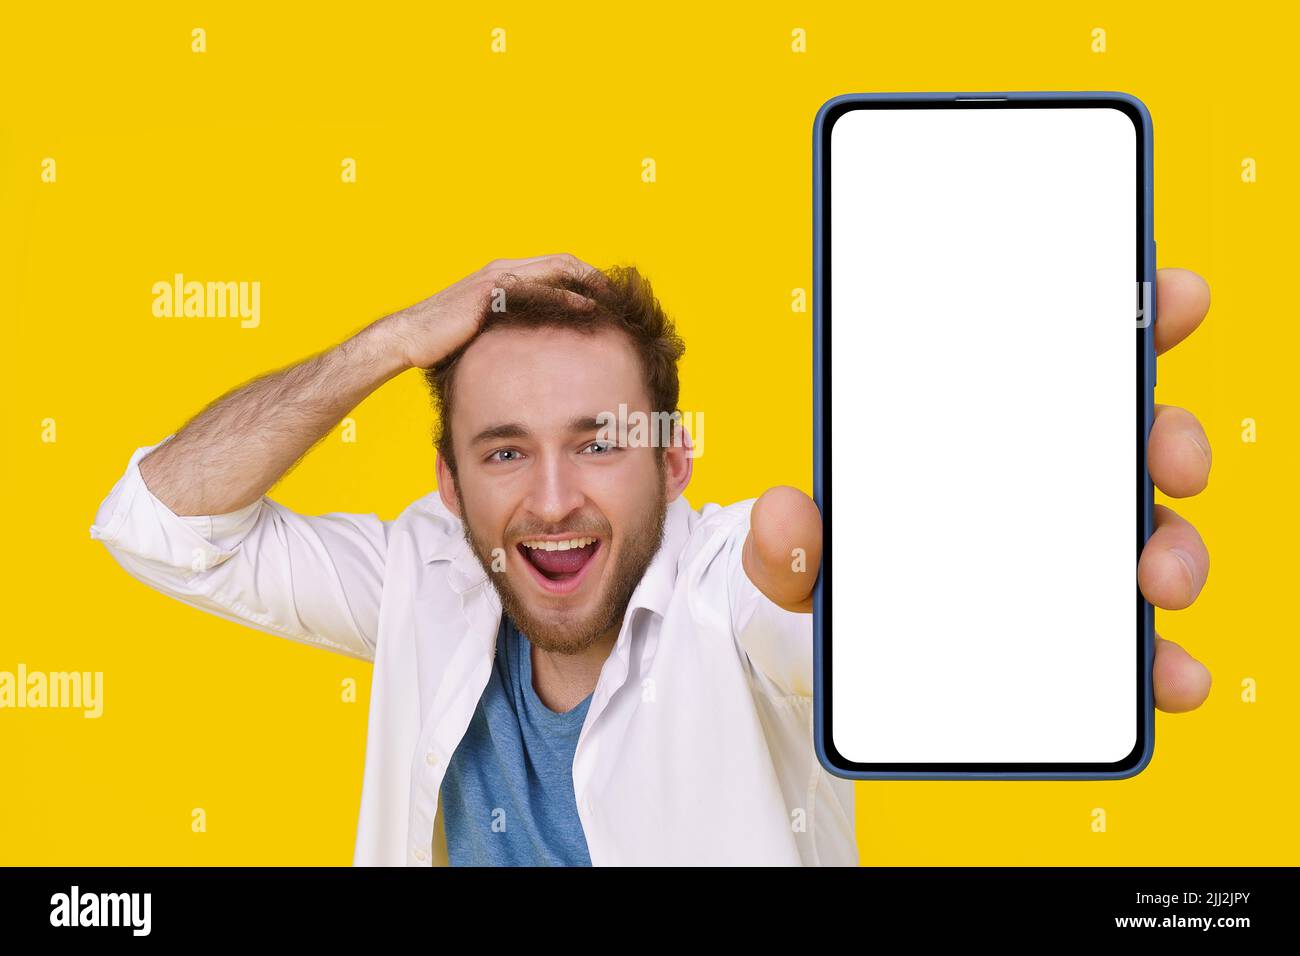 Beau jeune homme excité souriant émotionnellement touchant sa tête montrant un immense smartphone avec écran blanc. Mise en place de maquettes publicitaires d'applications mobiles. Jeune homme avec téléphone. Banque D'Images